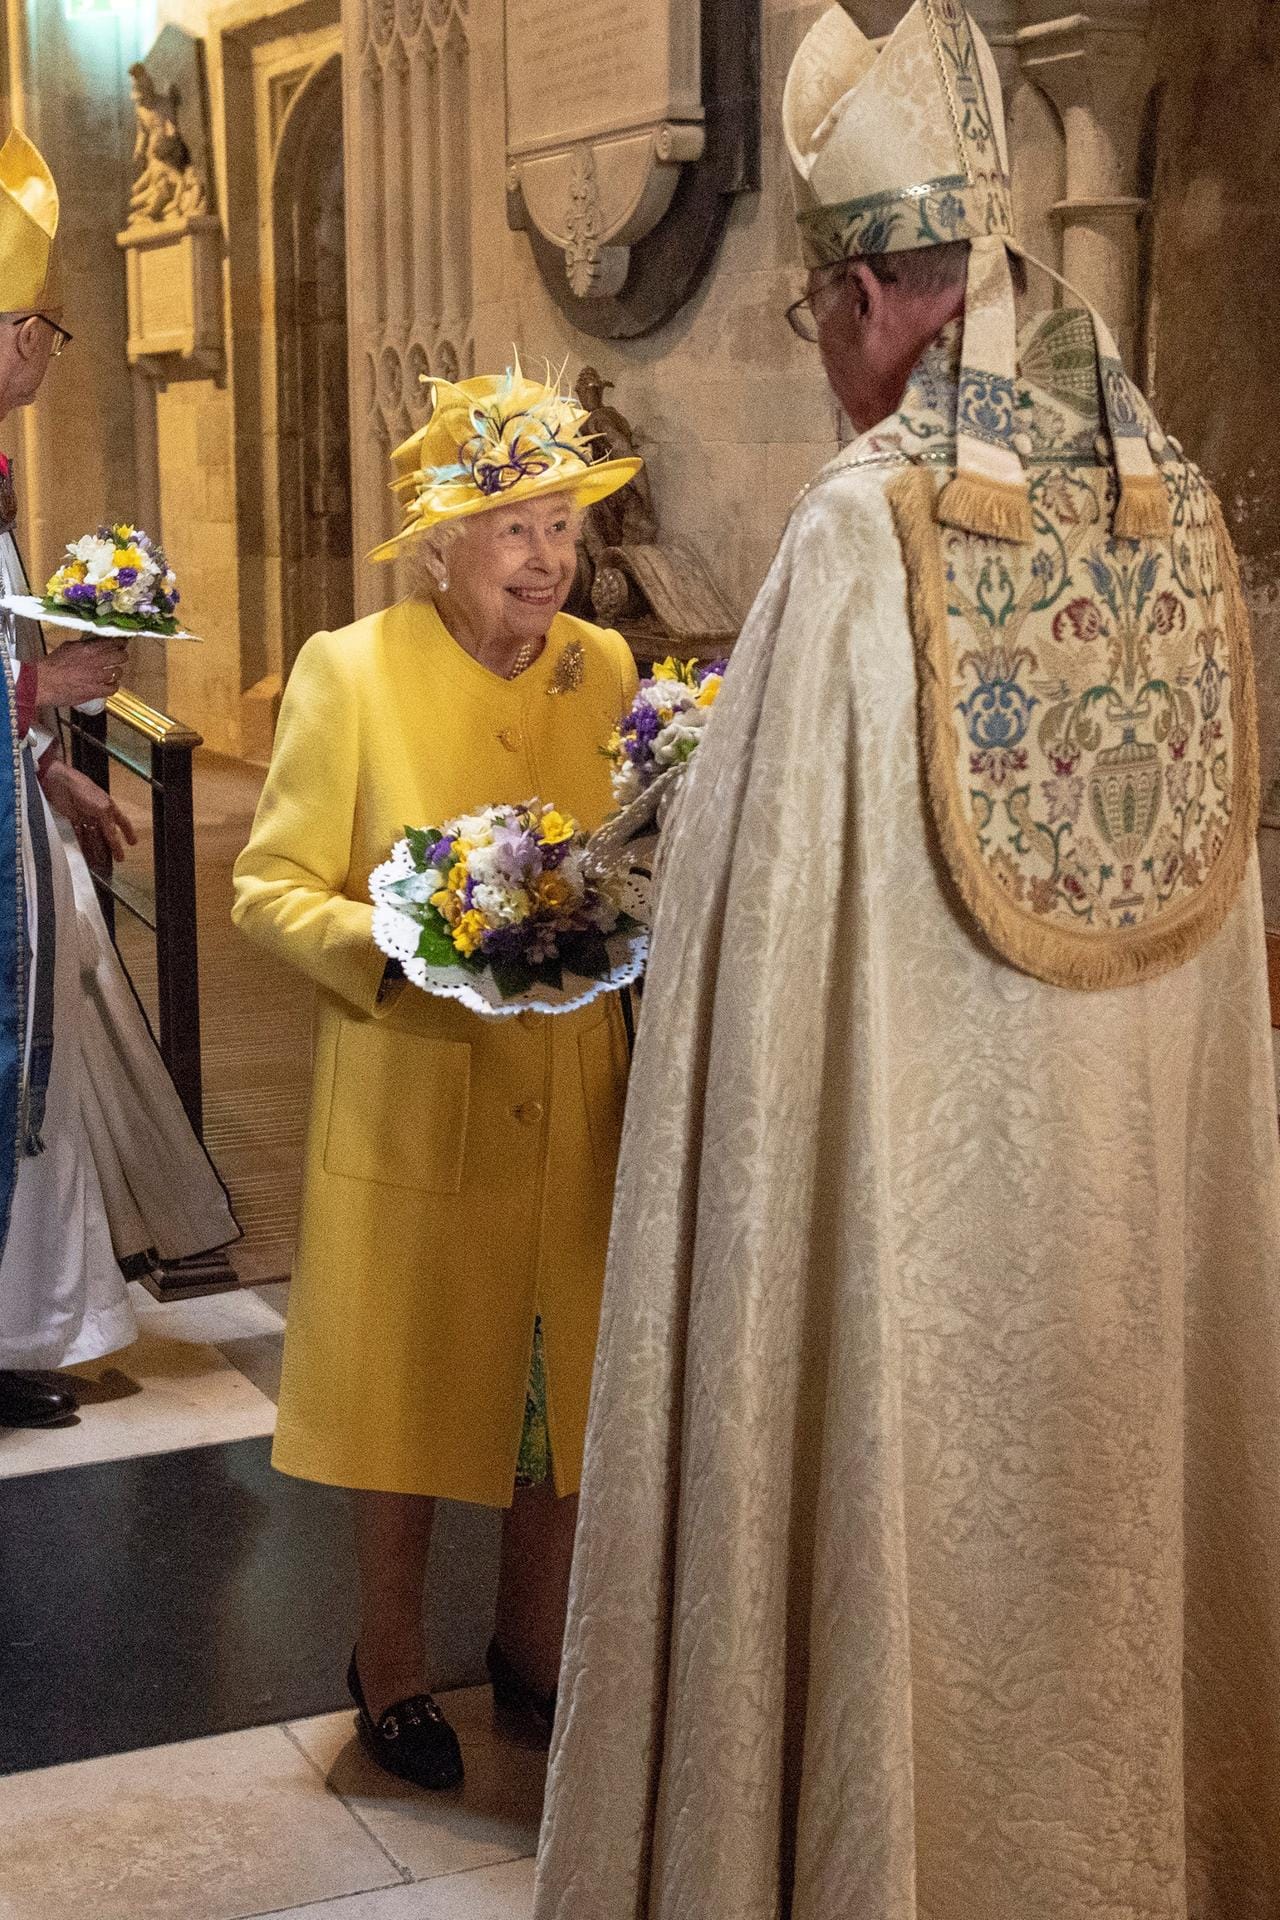 In diesem Jahr verteilte die Monarchin Beutelchen im Wert von 93 Pence an 93 Frauen und Männer, die zum Gottesdienst in die St.-George's-Kapelle in Windsor gekommen waren.